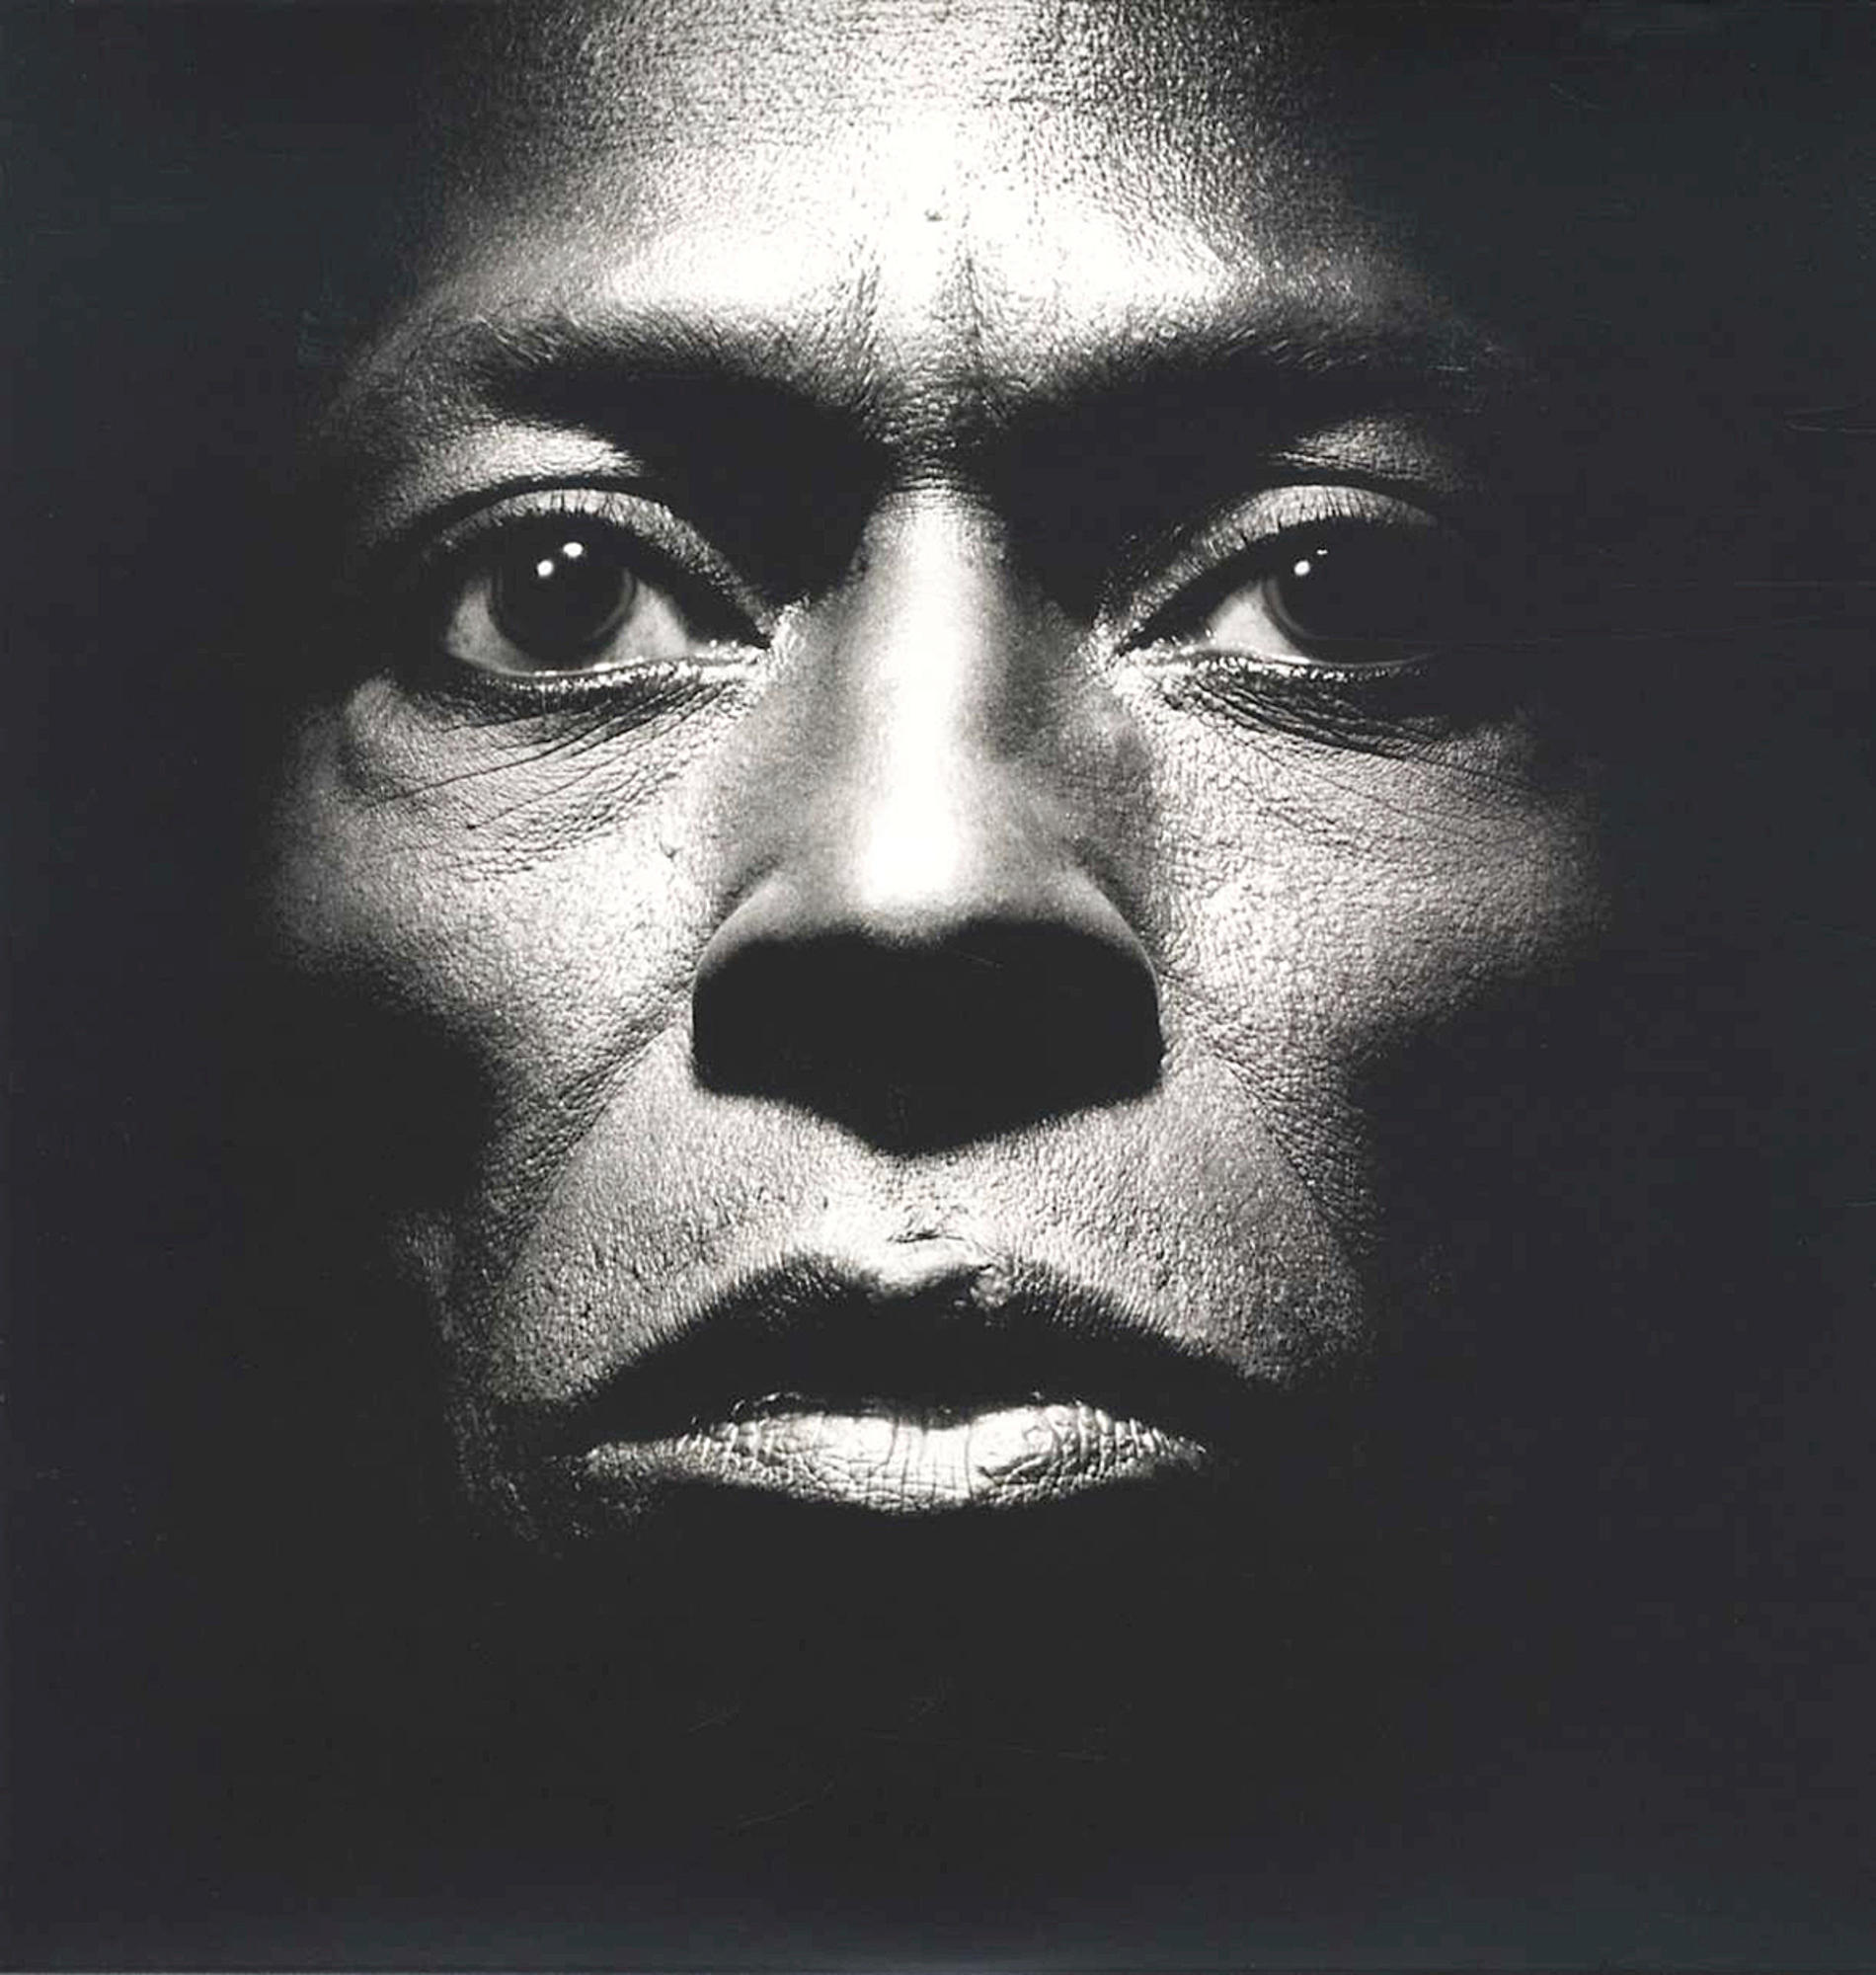 Miles Davis - Tutu (Deluxe) - (Vinyl)